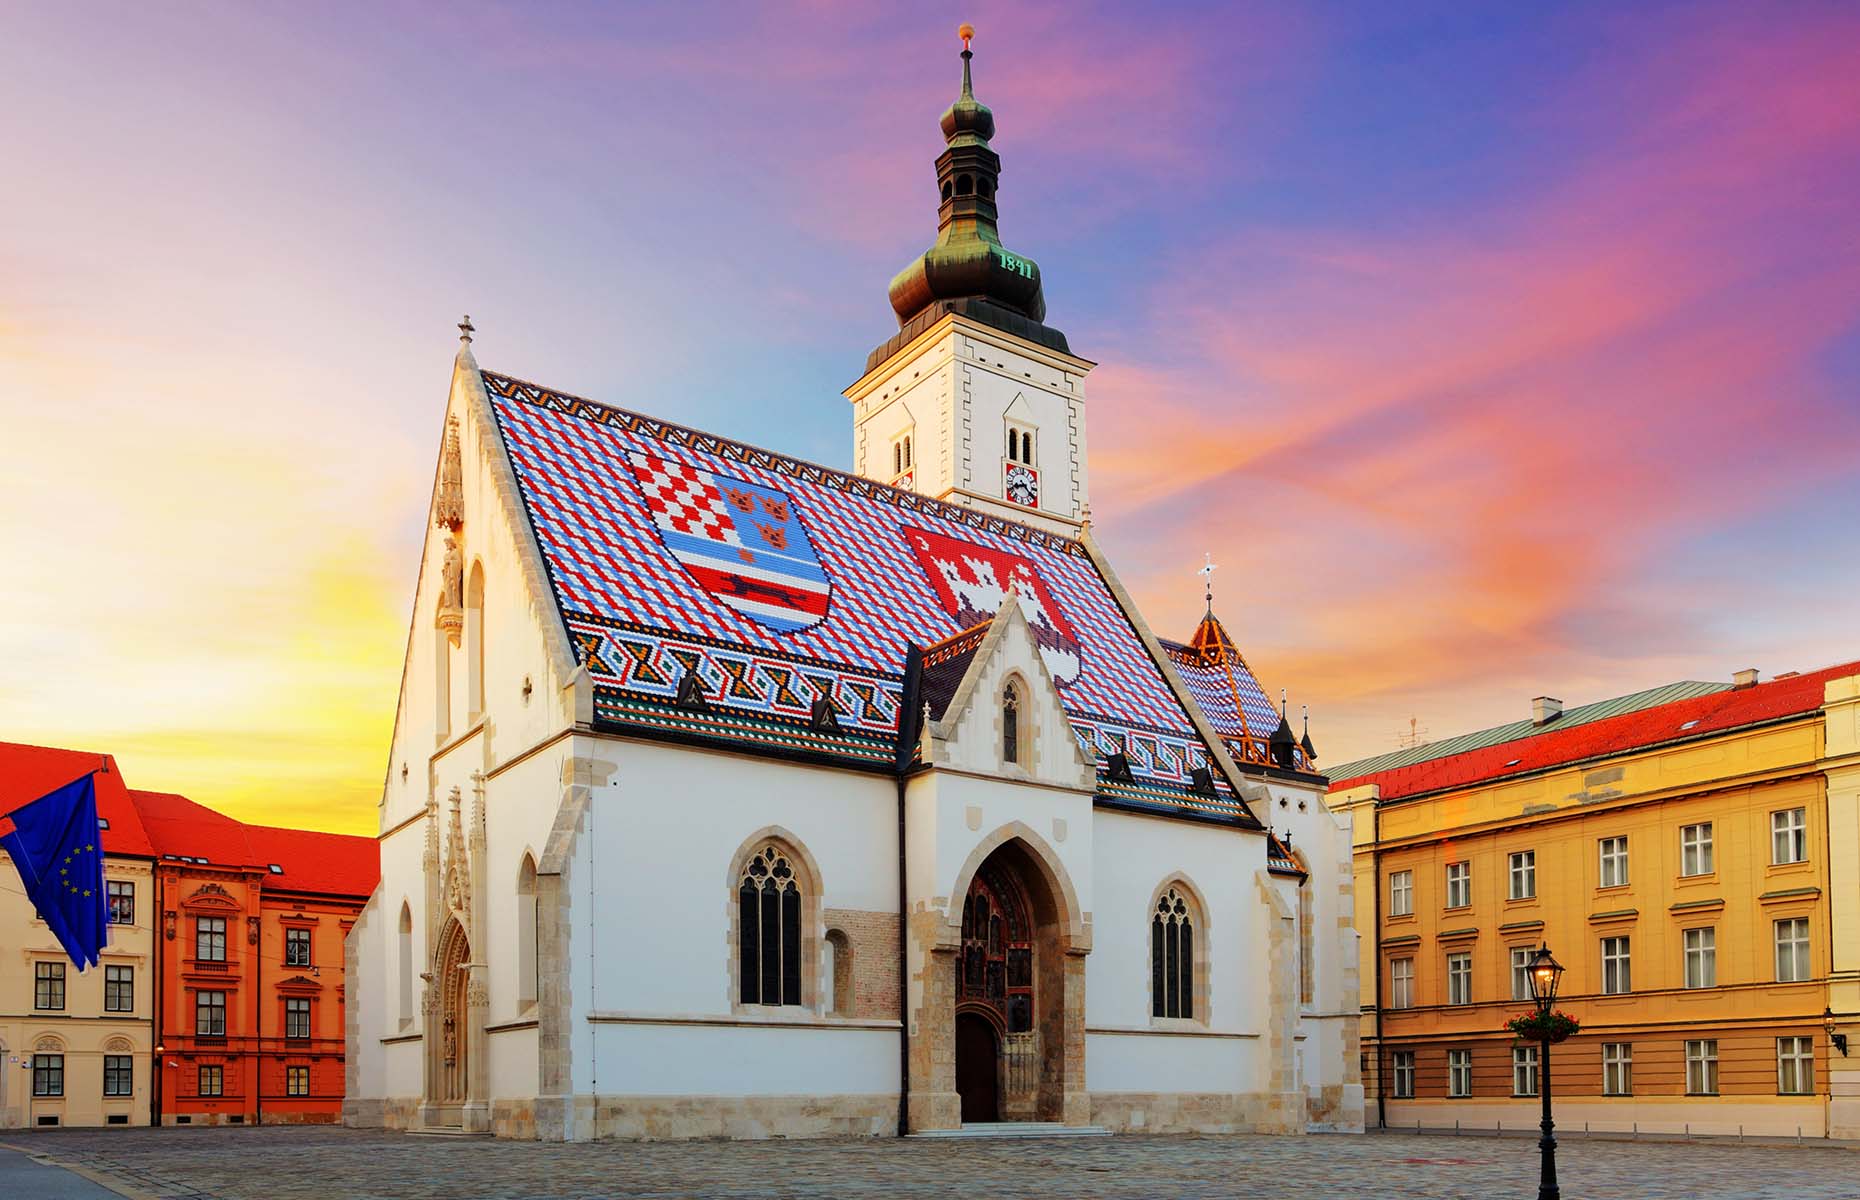 St Mark's Church in Zagreb (Image: TTstudio/Shutterstock)